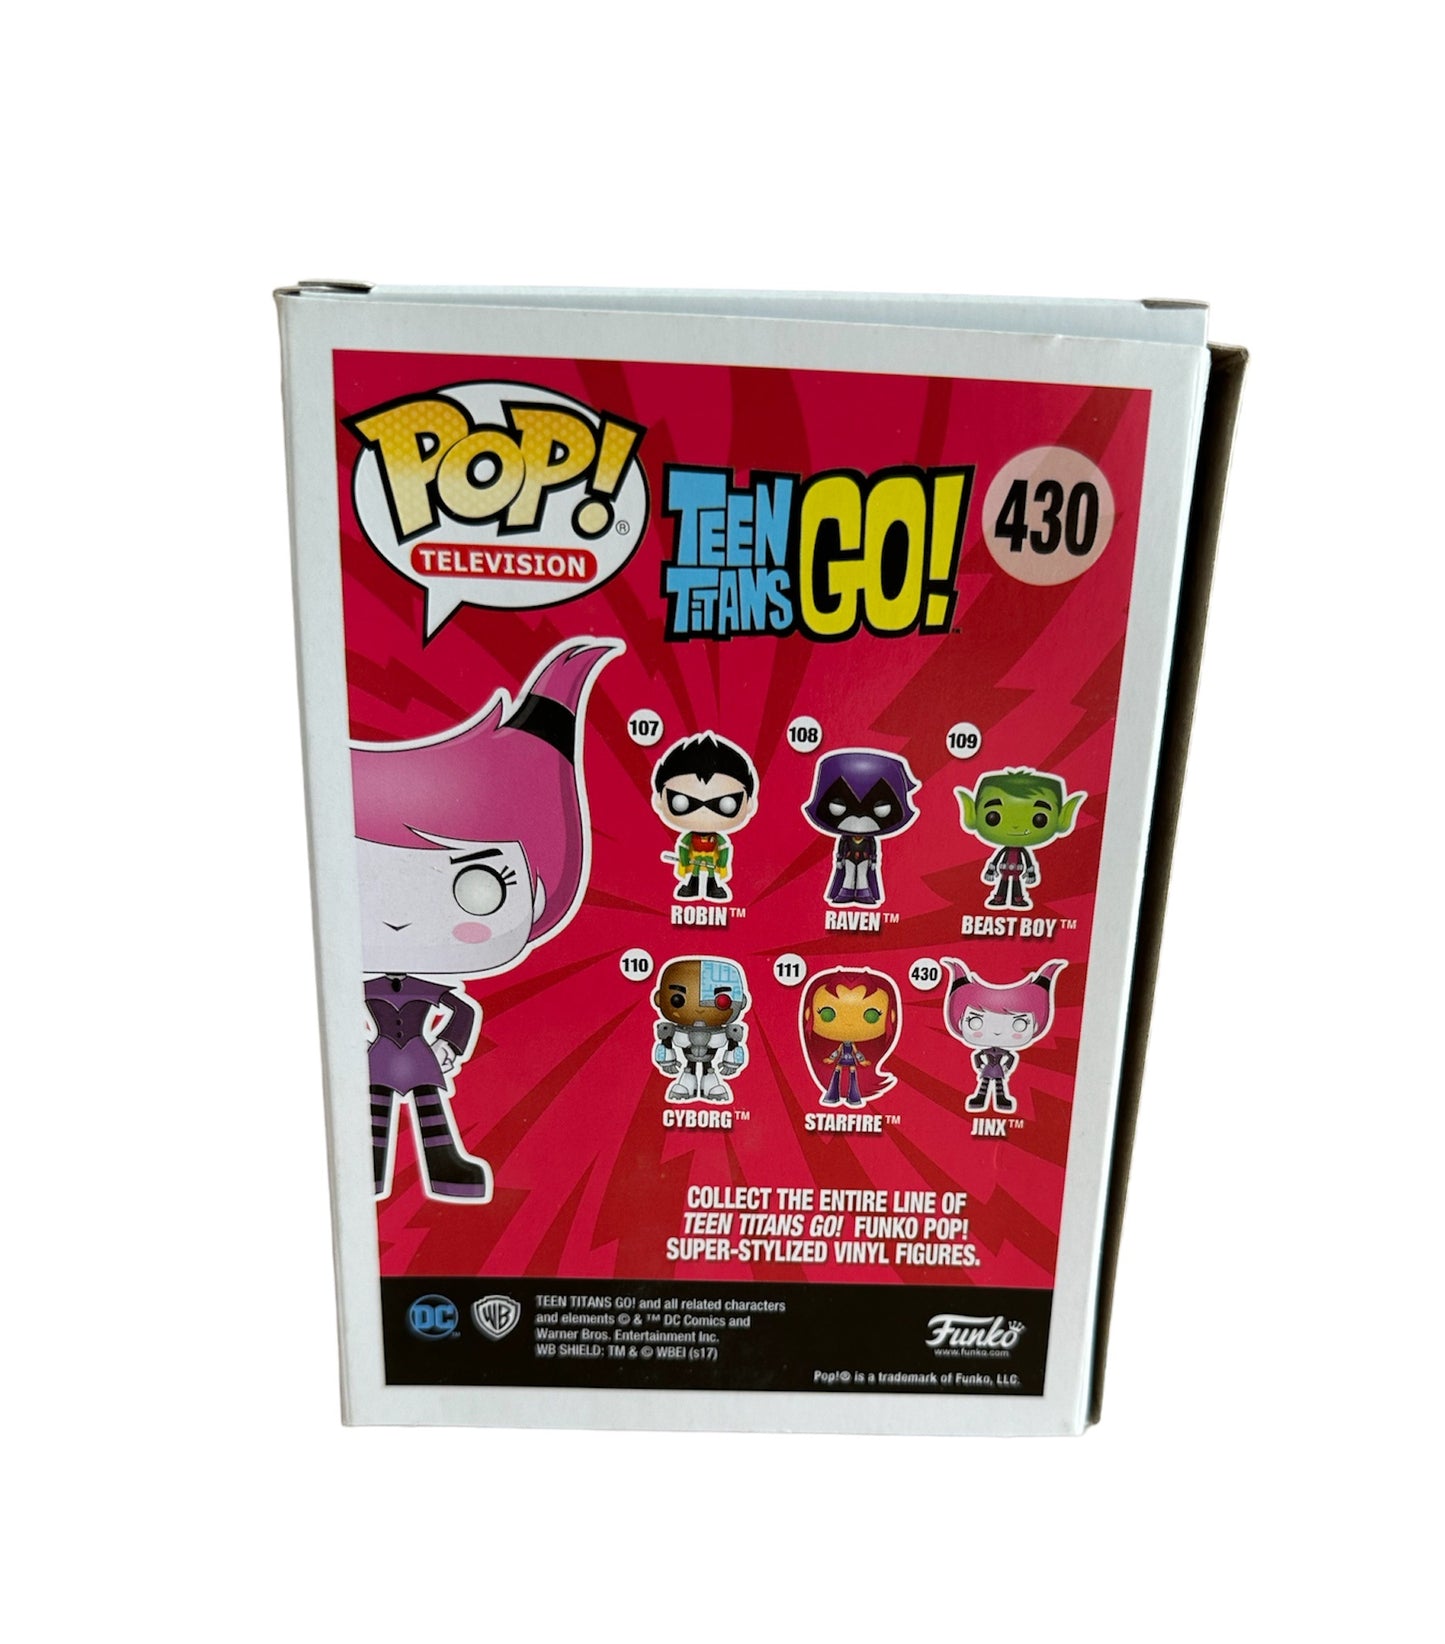 Vintage 2017 DC Comics Teen Titans Go! Pop Television Vinyl Figure - Jinx No. 430 - Brand New Shop Stock Room Find